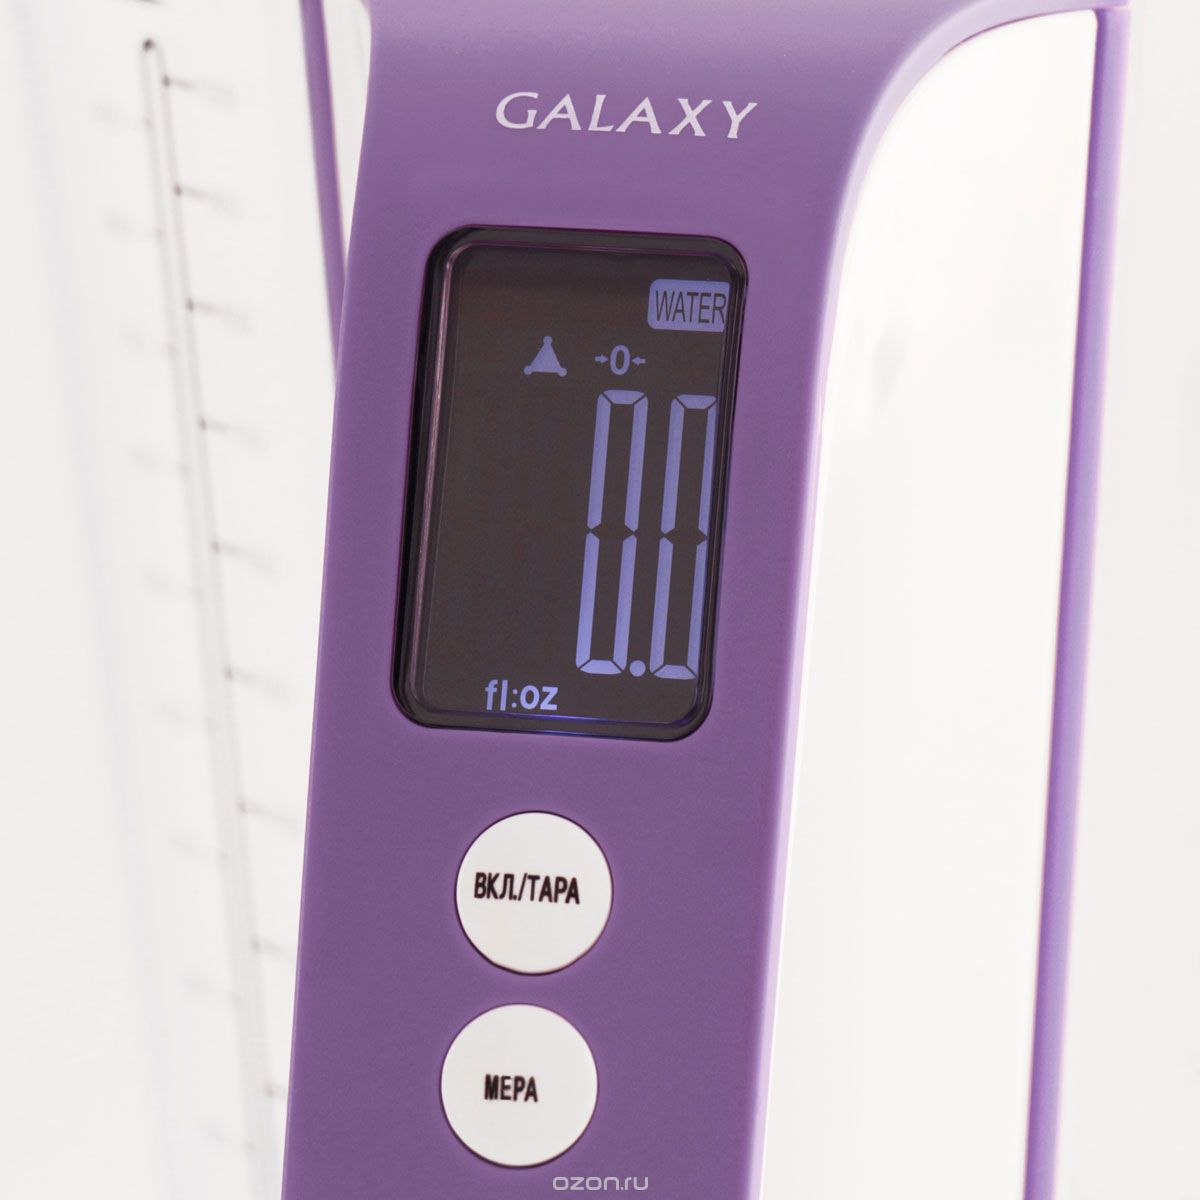   Galaxy GL 2805